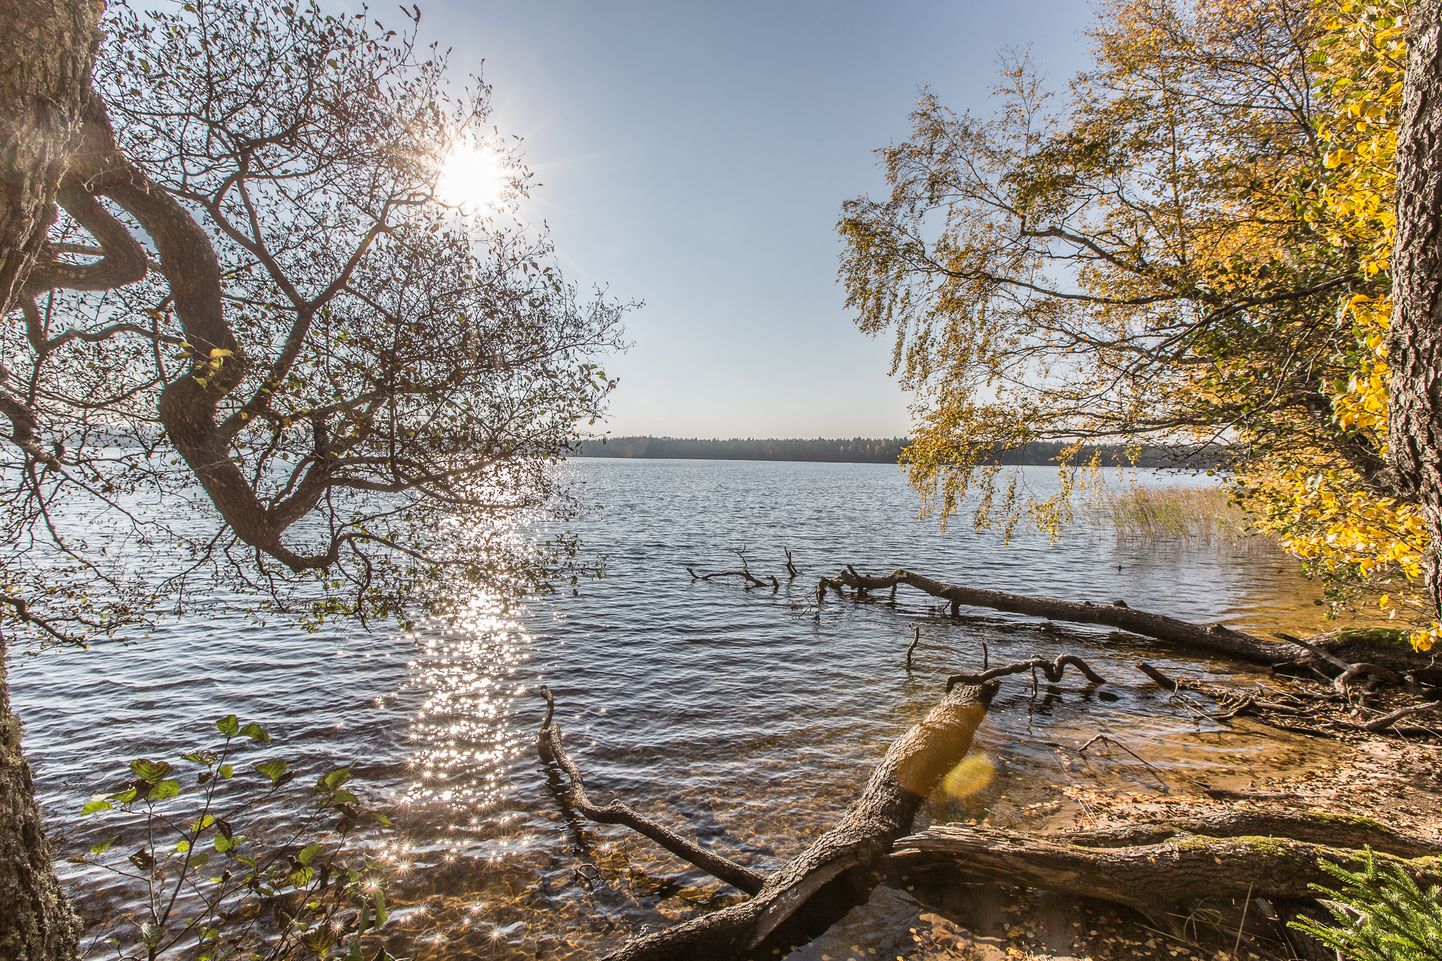 Исследование выяснит, что влияет на уровень воды в озере Ульясте и что может произойти в случае, если добыча сланца расширится в сторону озера.